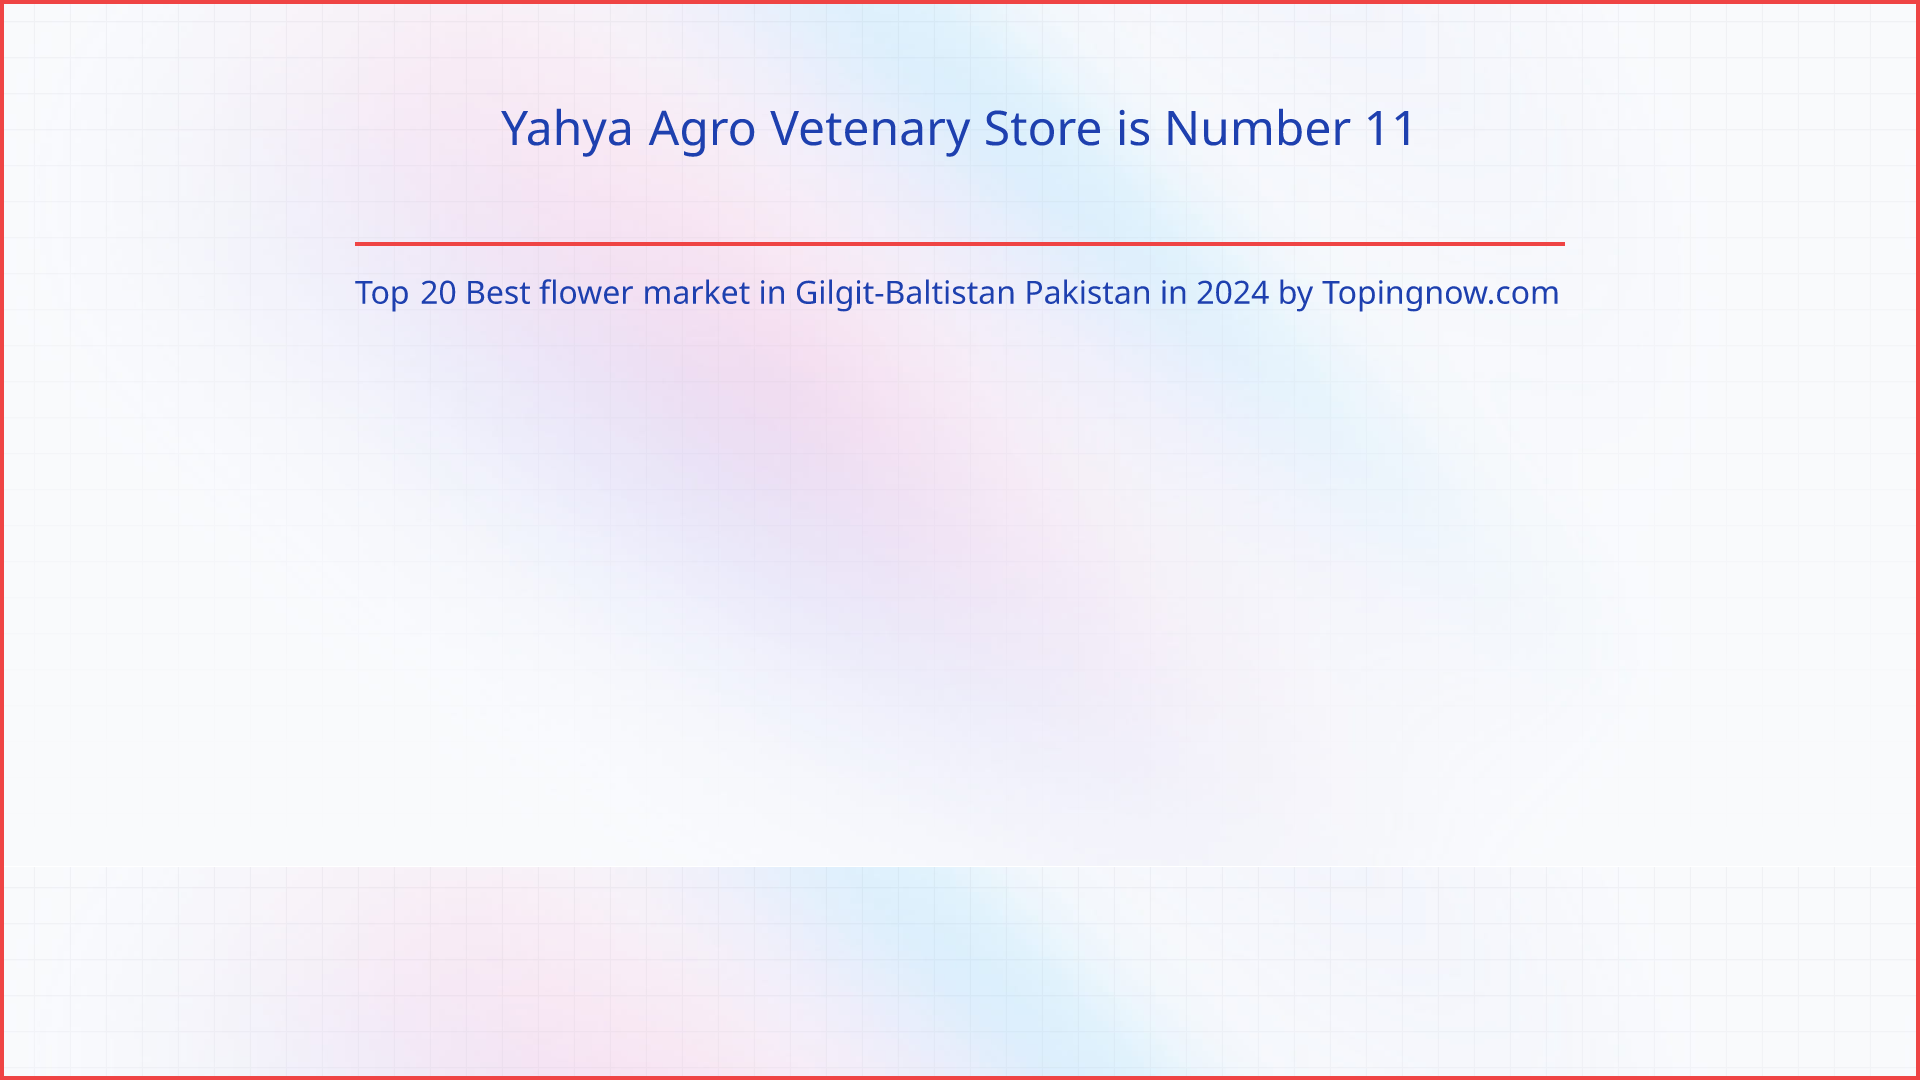 Yahya Agro Vetenary Store: Top 20 Best flower market in Gilgit-Baltistan Pakistan in 2024